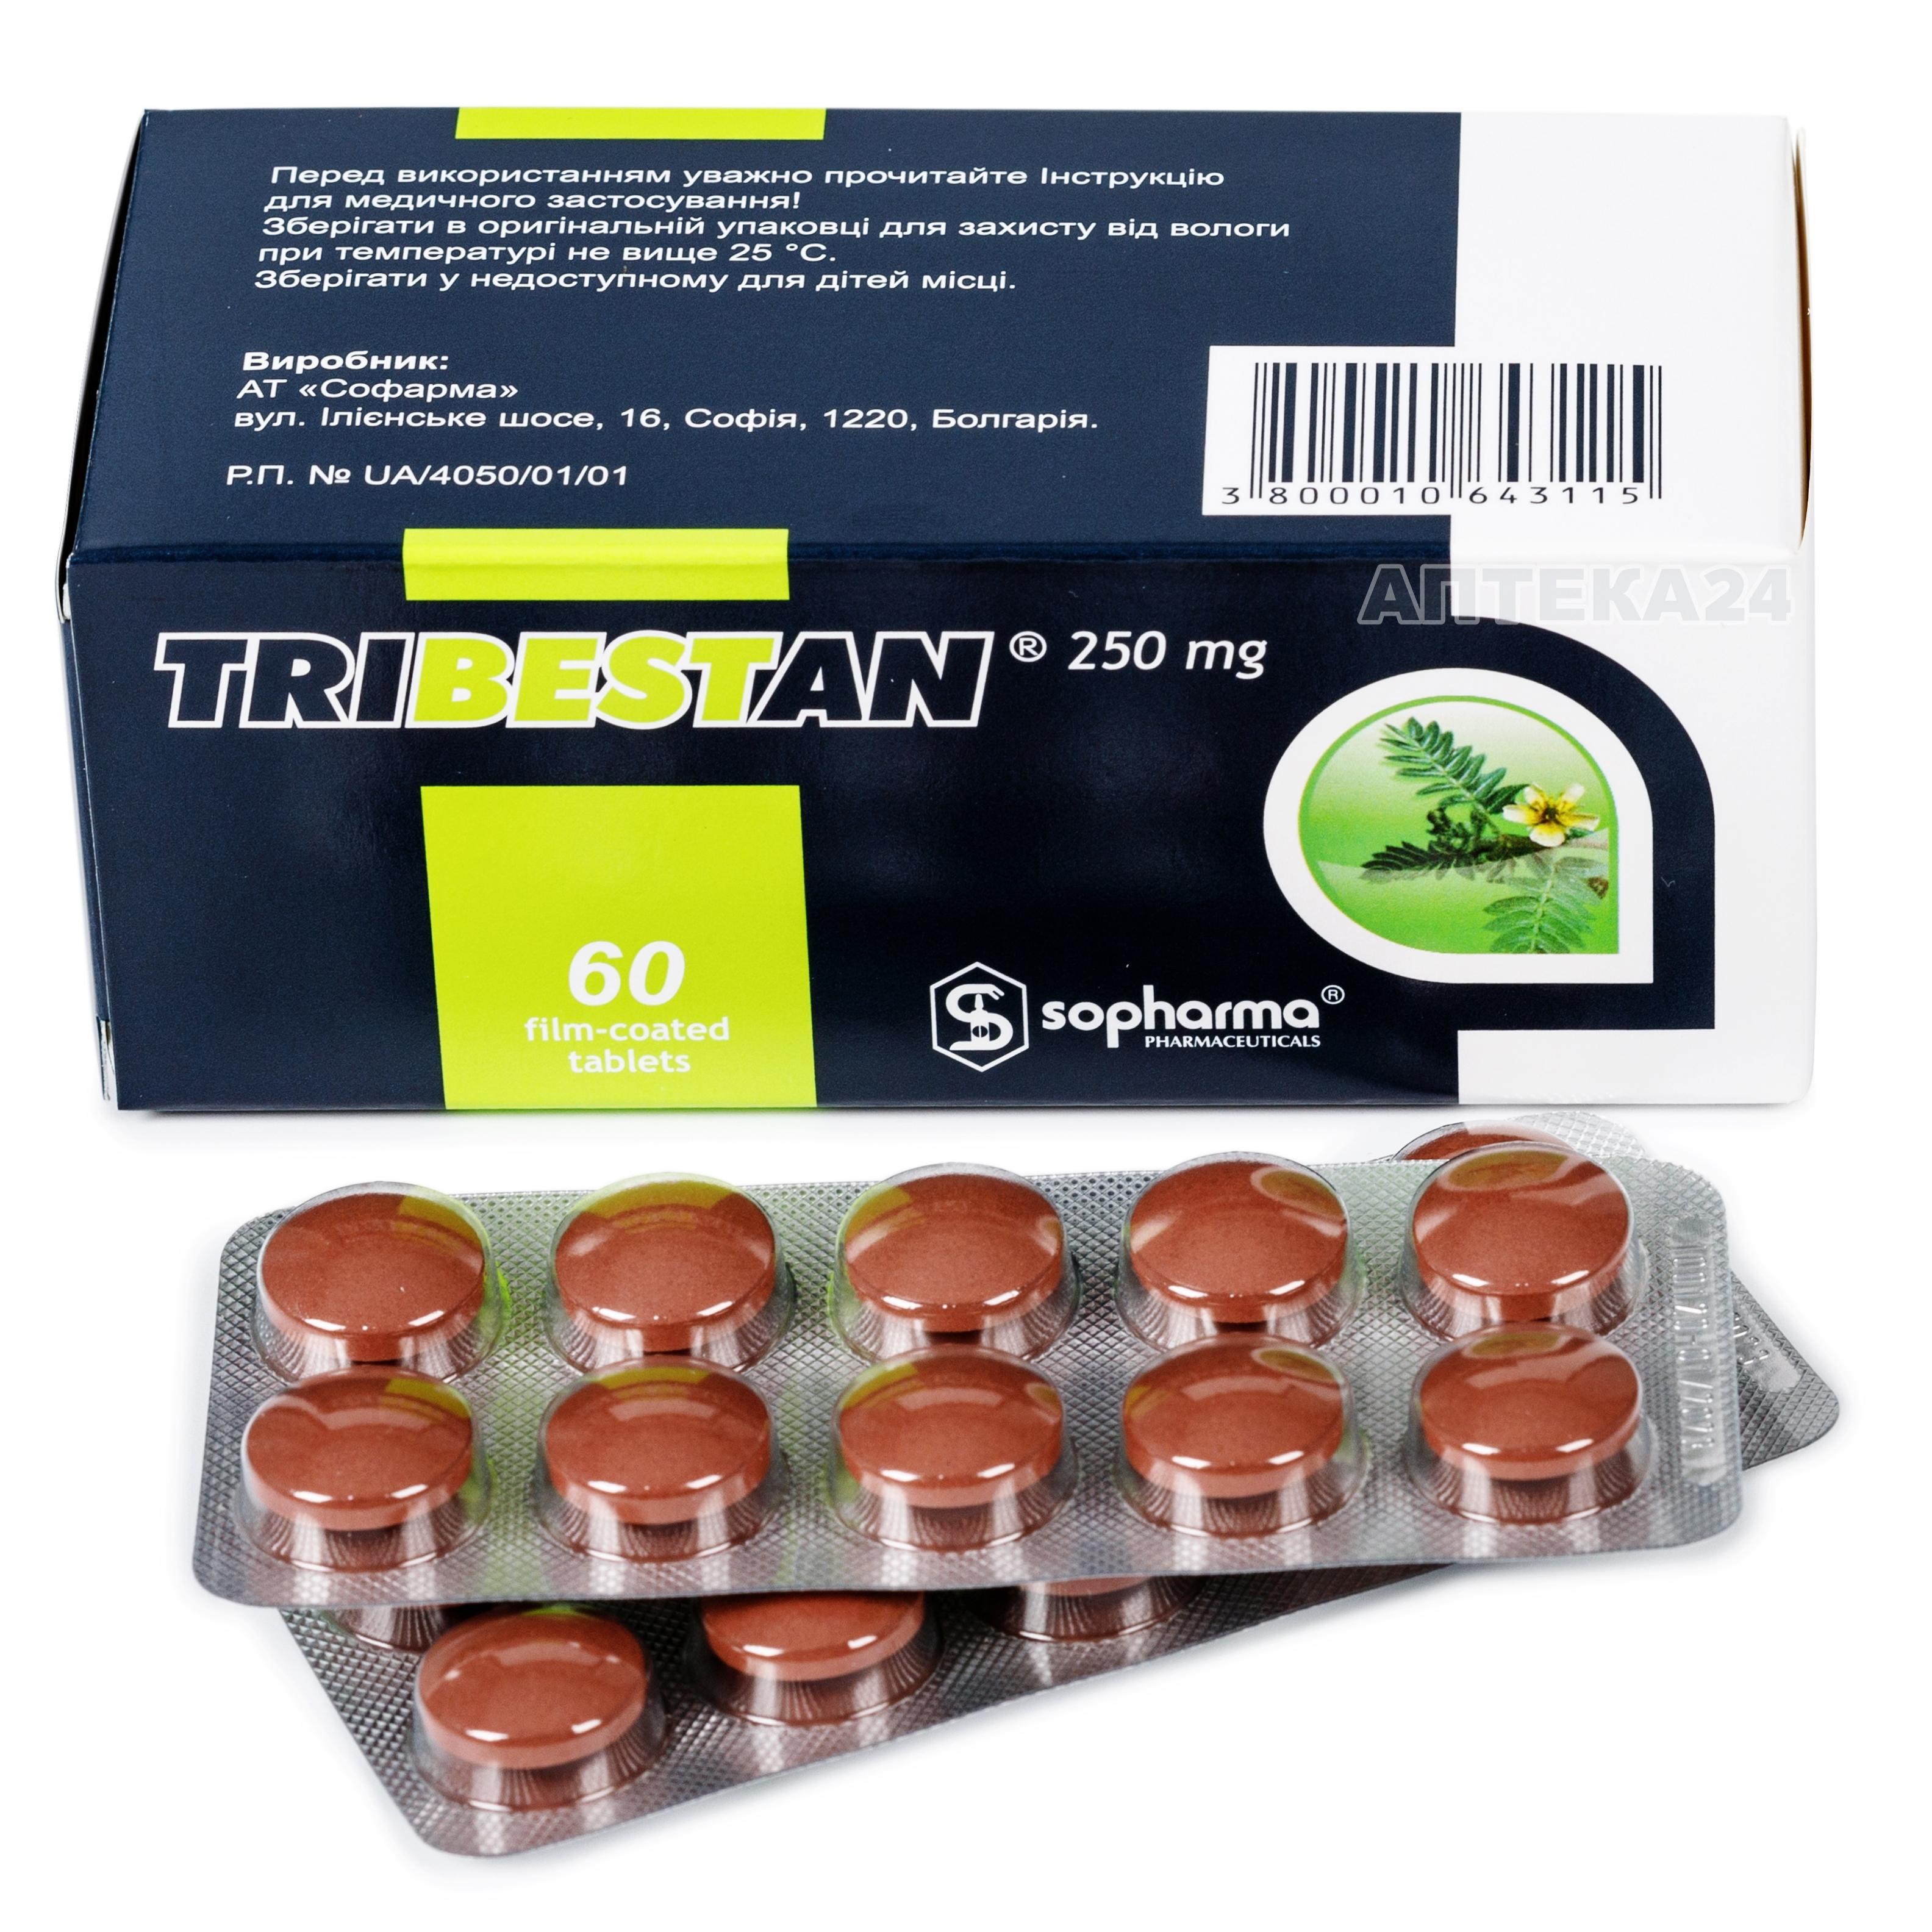 Аналоги препарата Трибестан таблетки по 250 мг, 60 шт. - Sopharma: по .